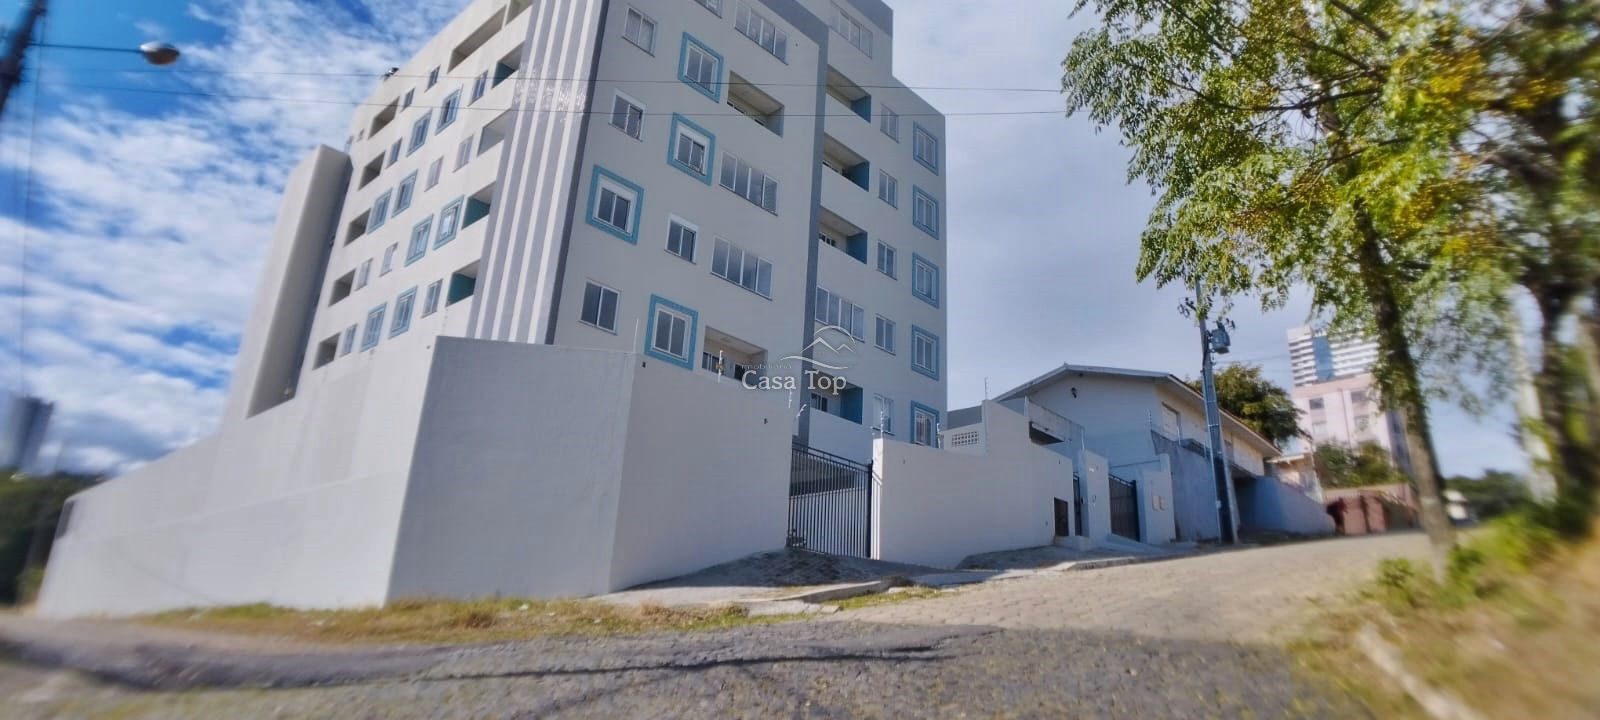 Apartamento à venda Edifício Rio Lena - Centro